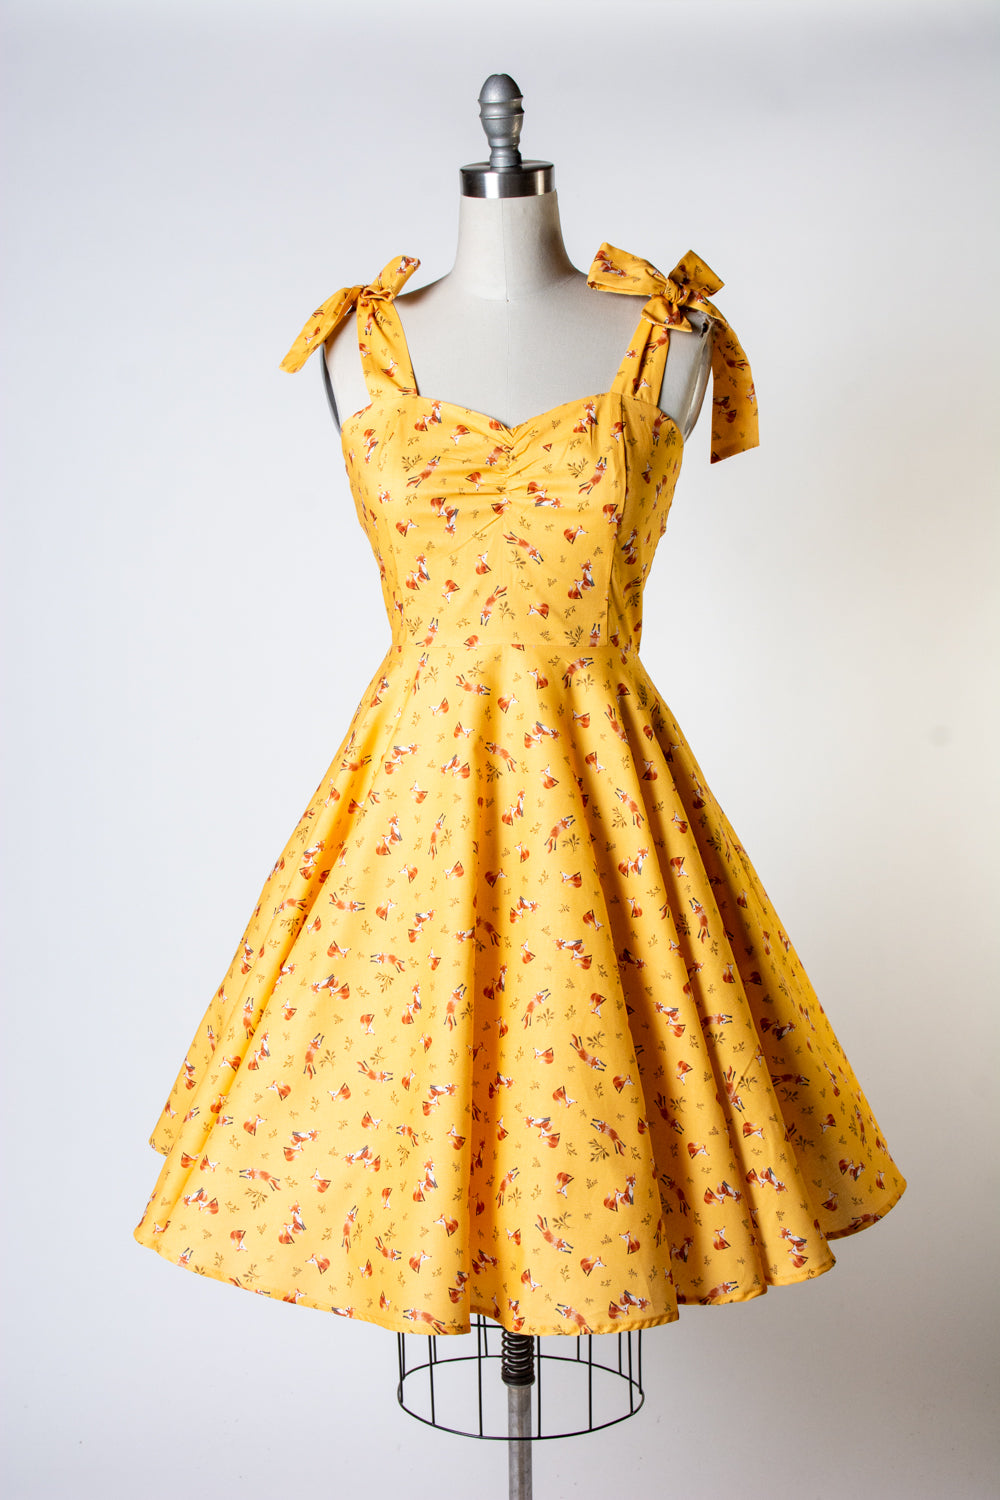 Sarah Swing Dress - Foxes, Mustard